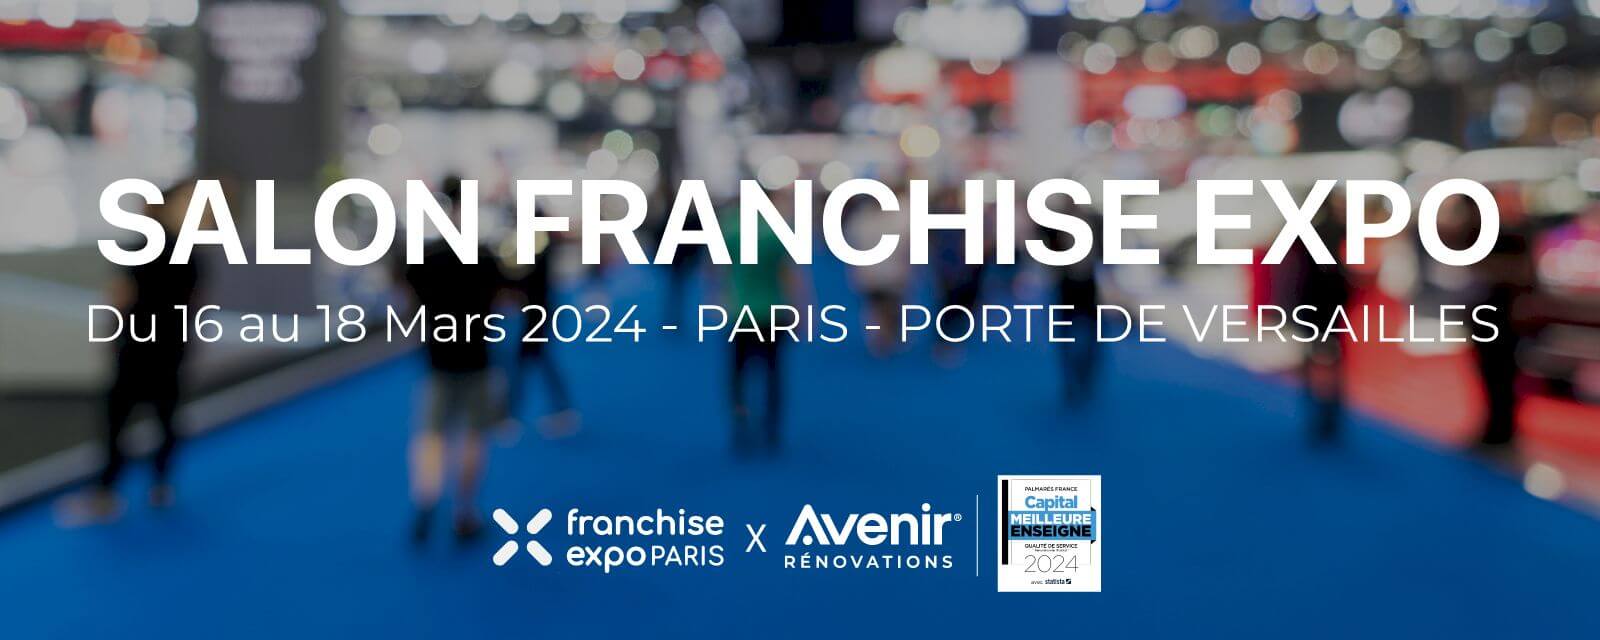 Découvrez Avenir Rénovations au Salon Franchise Expo Paris 2024 !